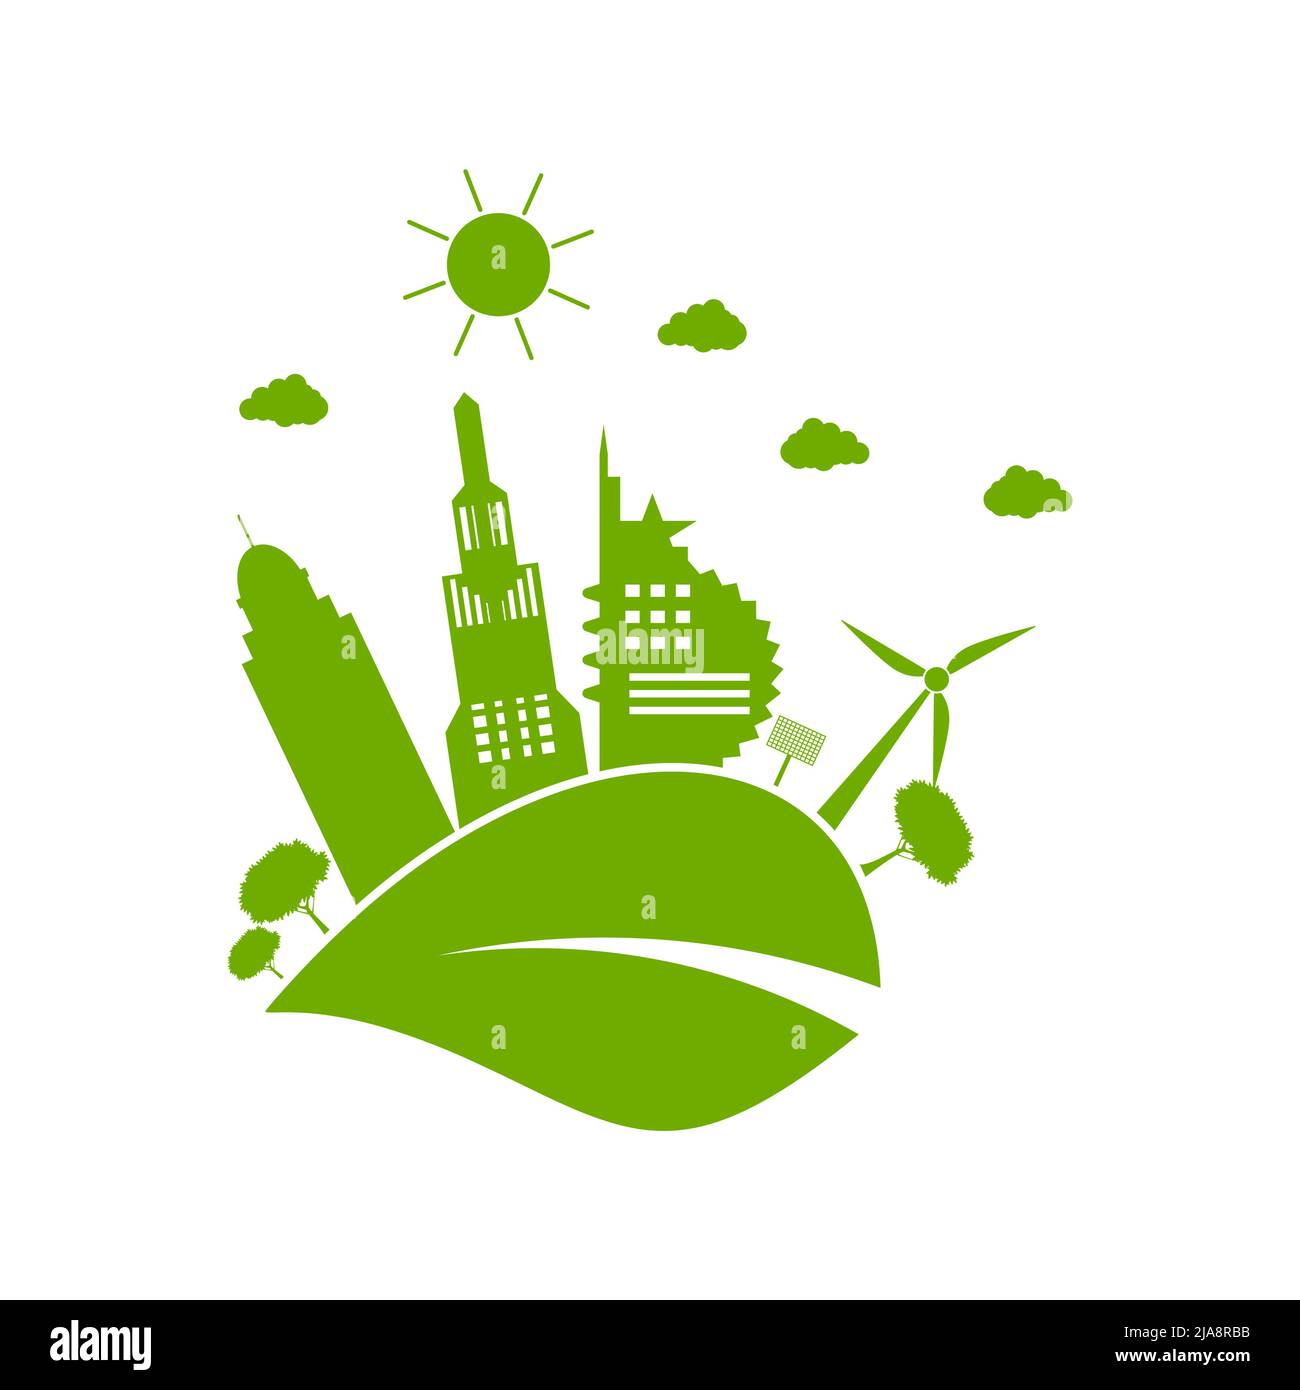 Les villes vertes aident le monde avec des idées de concept écologiques.illustration vectorielle Illustration de Vecteur